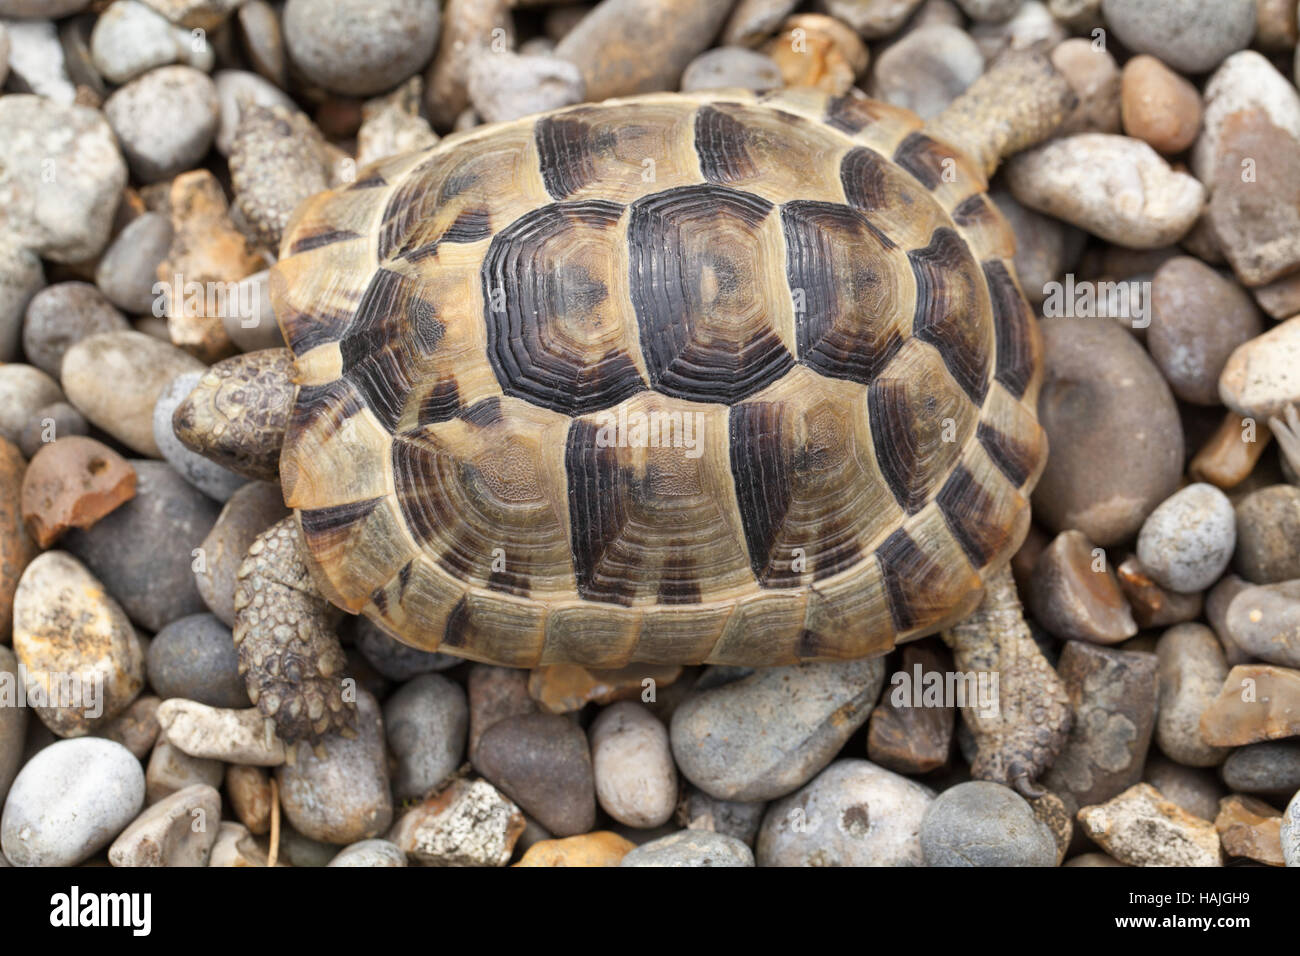 Sperone mediterraneo-thighed tartaruga (Testudo graeca). I capretti. Profilo. Carapace. Shell. Gli anelli di crescita su scutes. Foto Stock